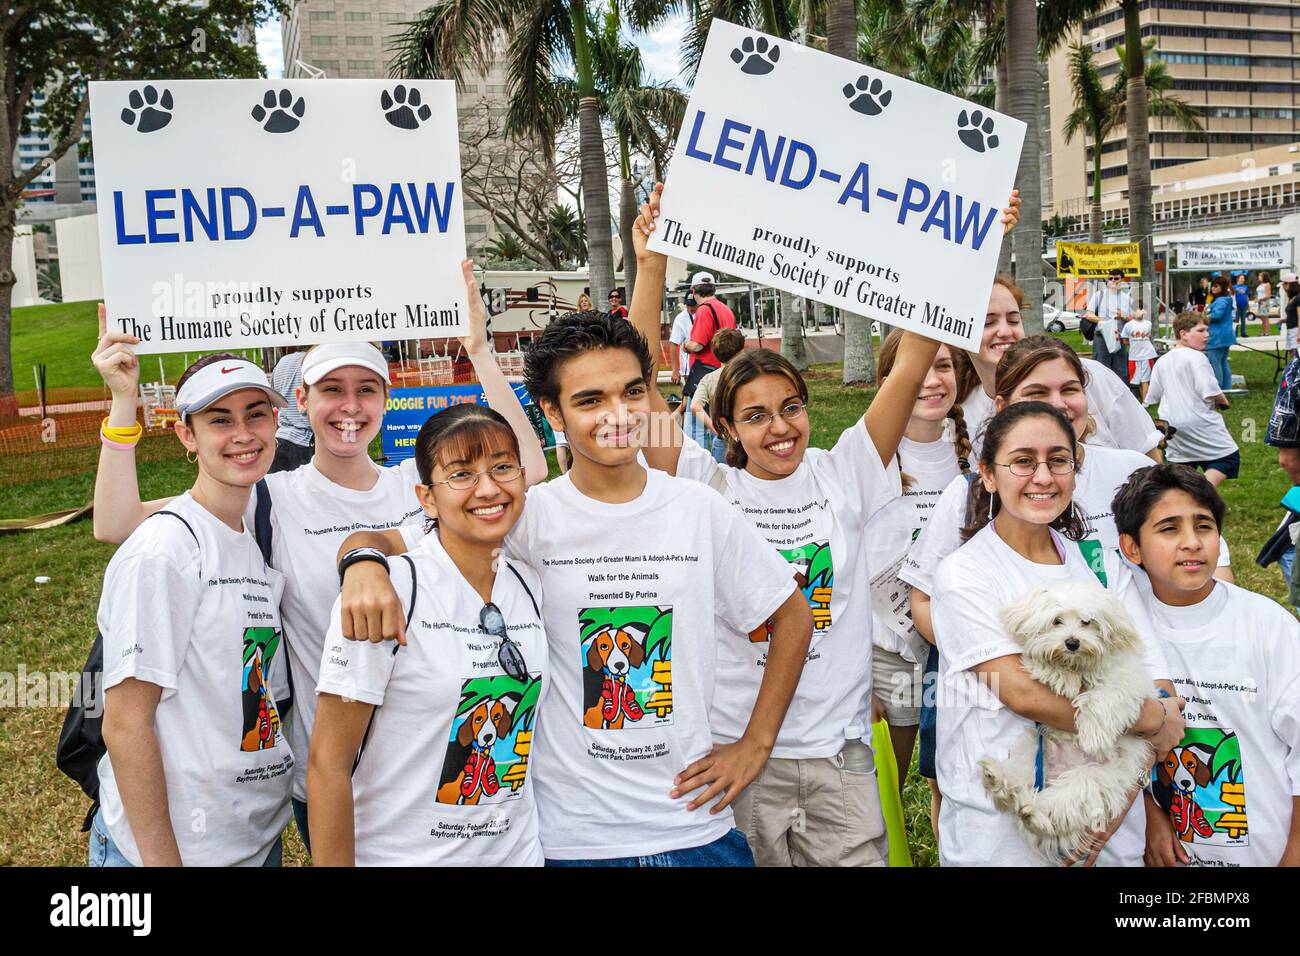 Miami Florida, Bayfront Park Walk for the Animals, Humane Society événement de collecte de fonds chiens, adolescents adolescents adolescents adolescents étudiants bénévoles bénévoles Banque D'Images